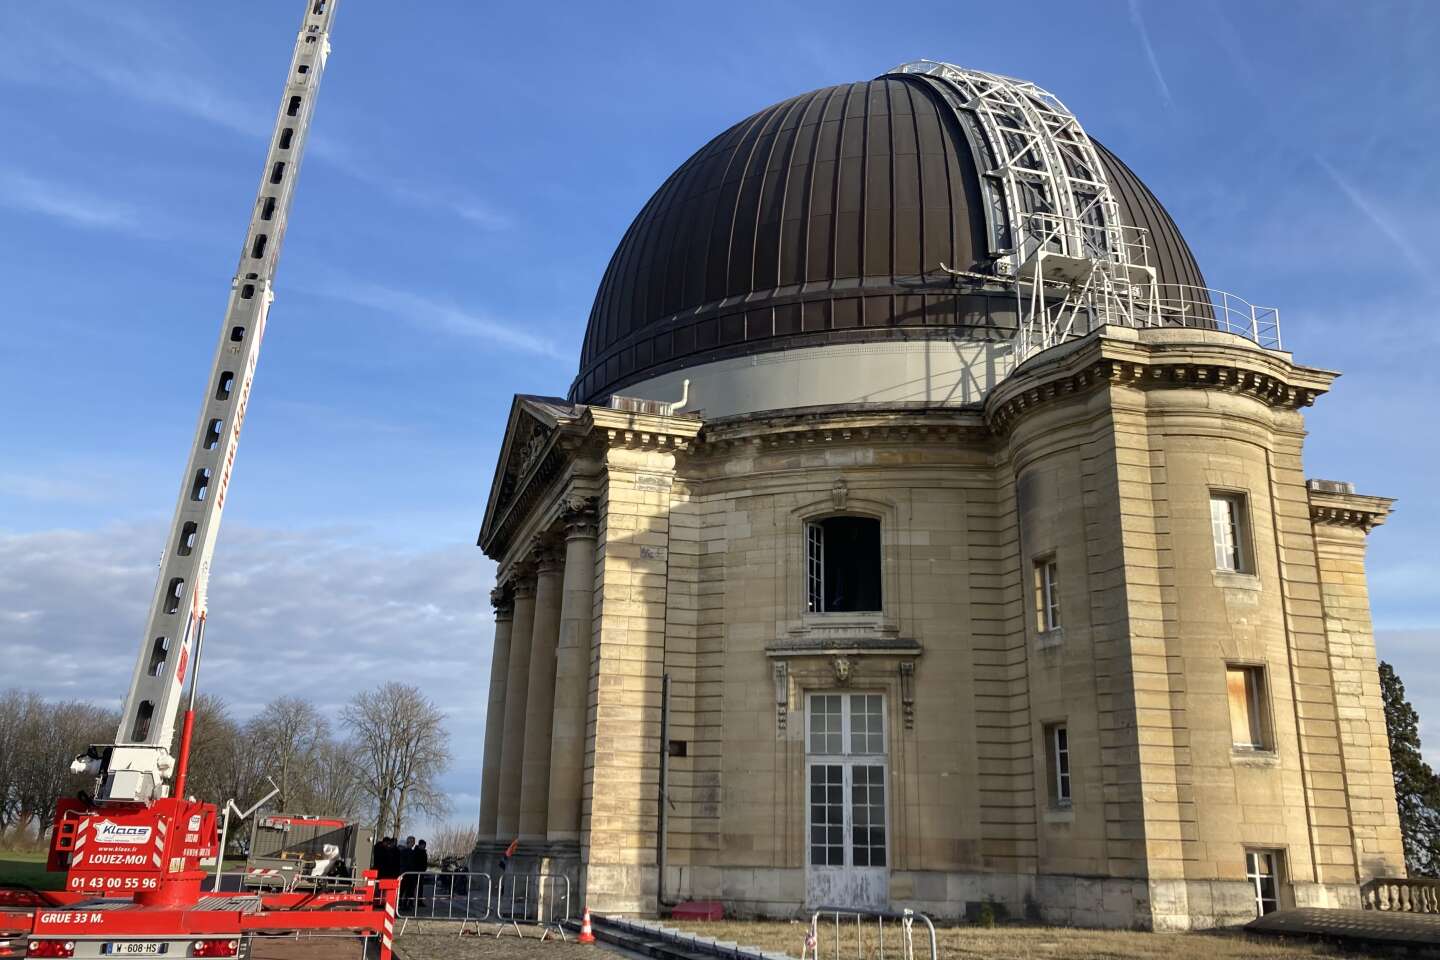 Das große Teleskop des Meudon-Observatoriums deckt die Sicht ab